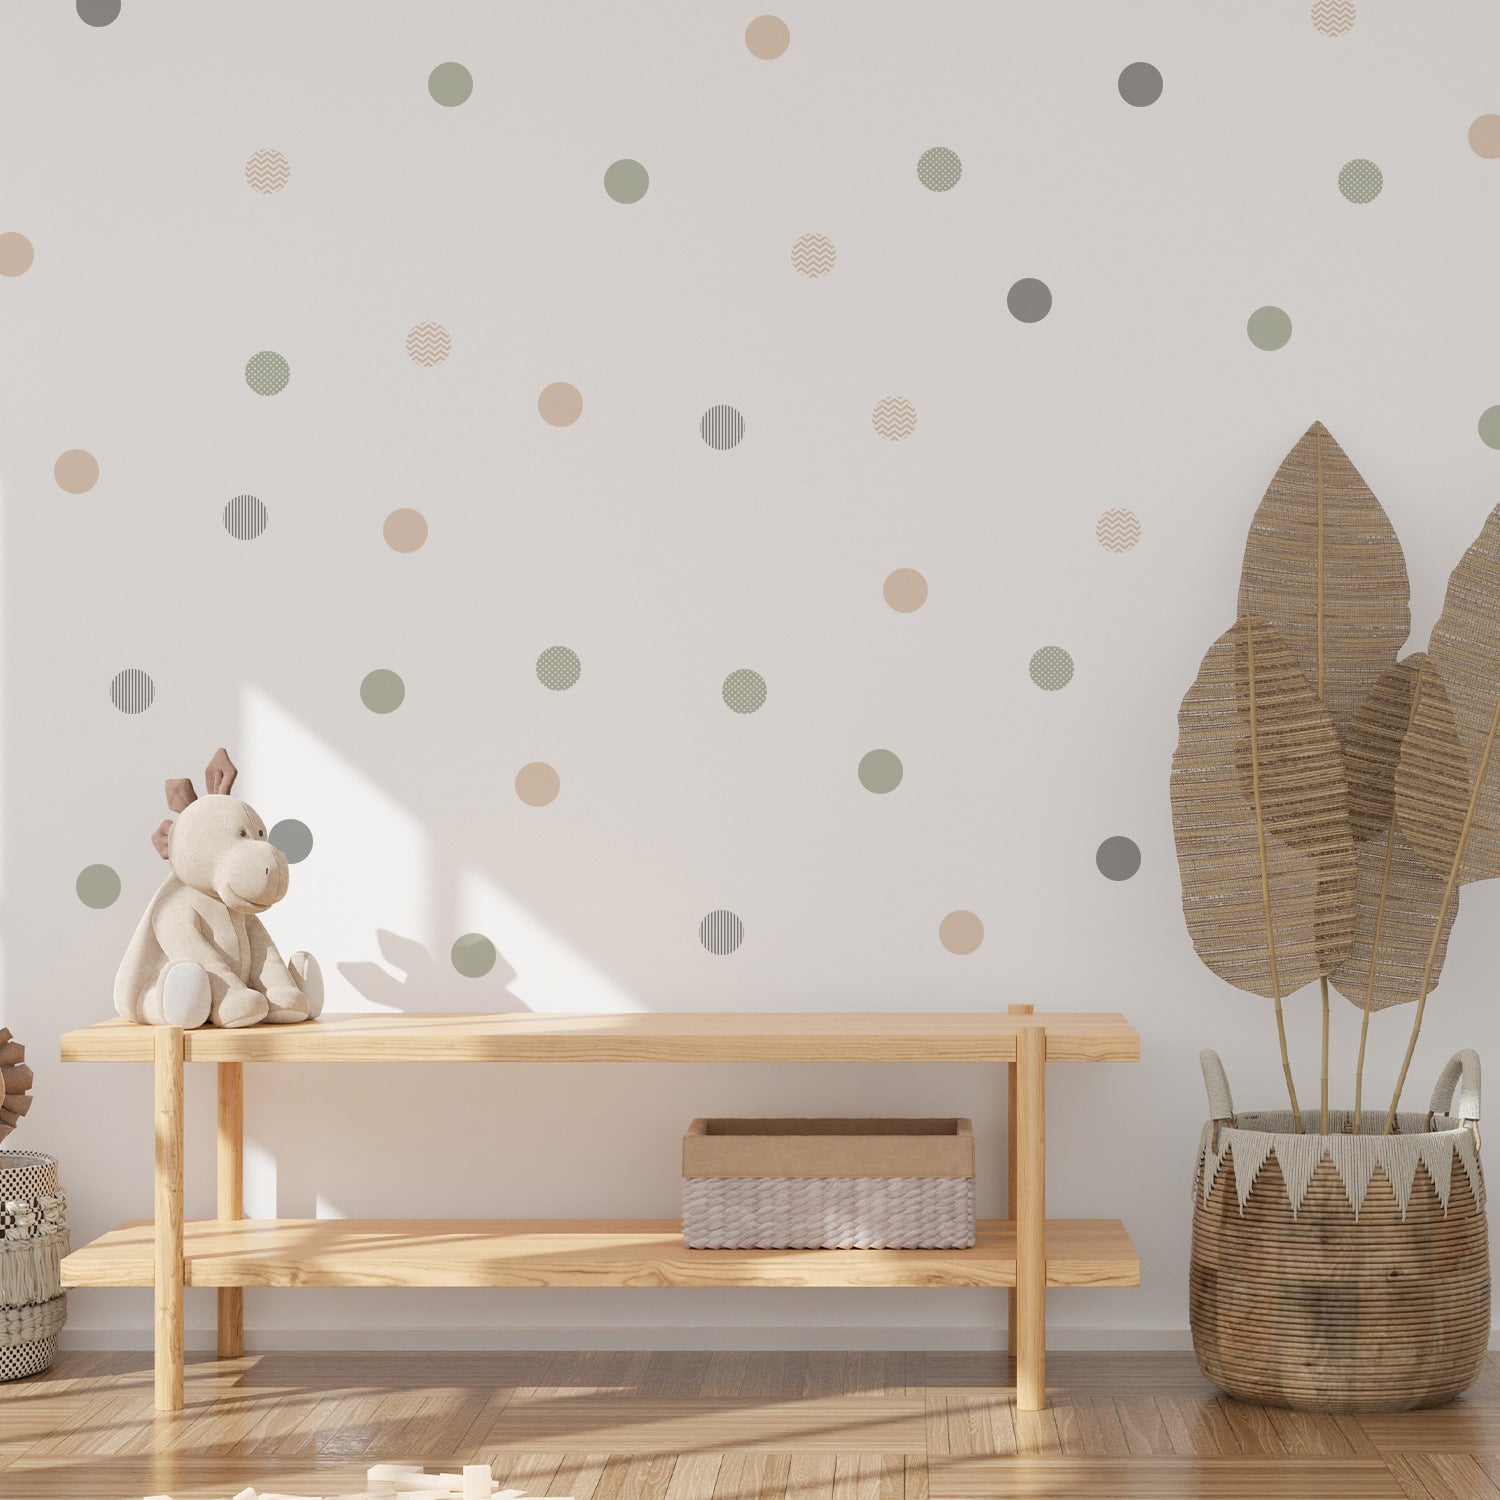 Bohemian Style Polka Dots Wall Decals - 36pcs - Taylorson